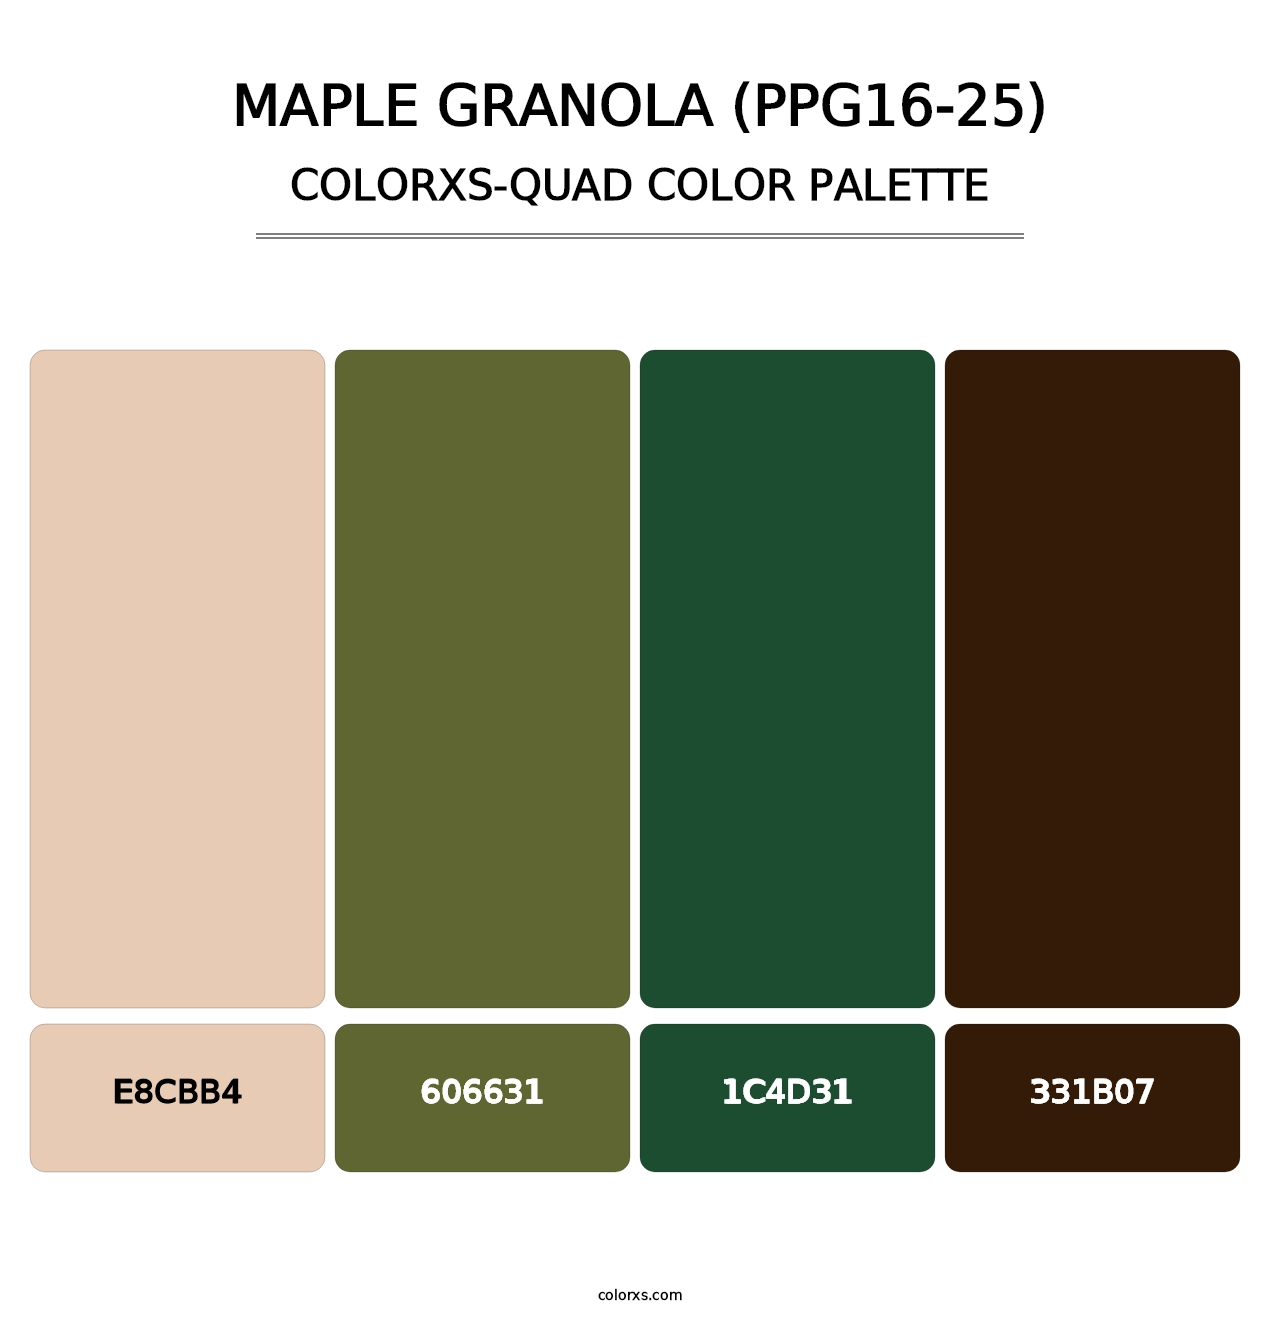 Maple Granola (PPG16-25) - Colorxs Quad Palette